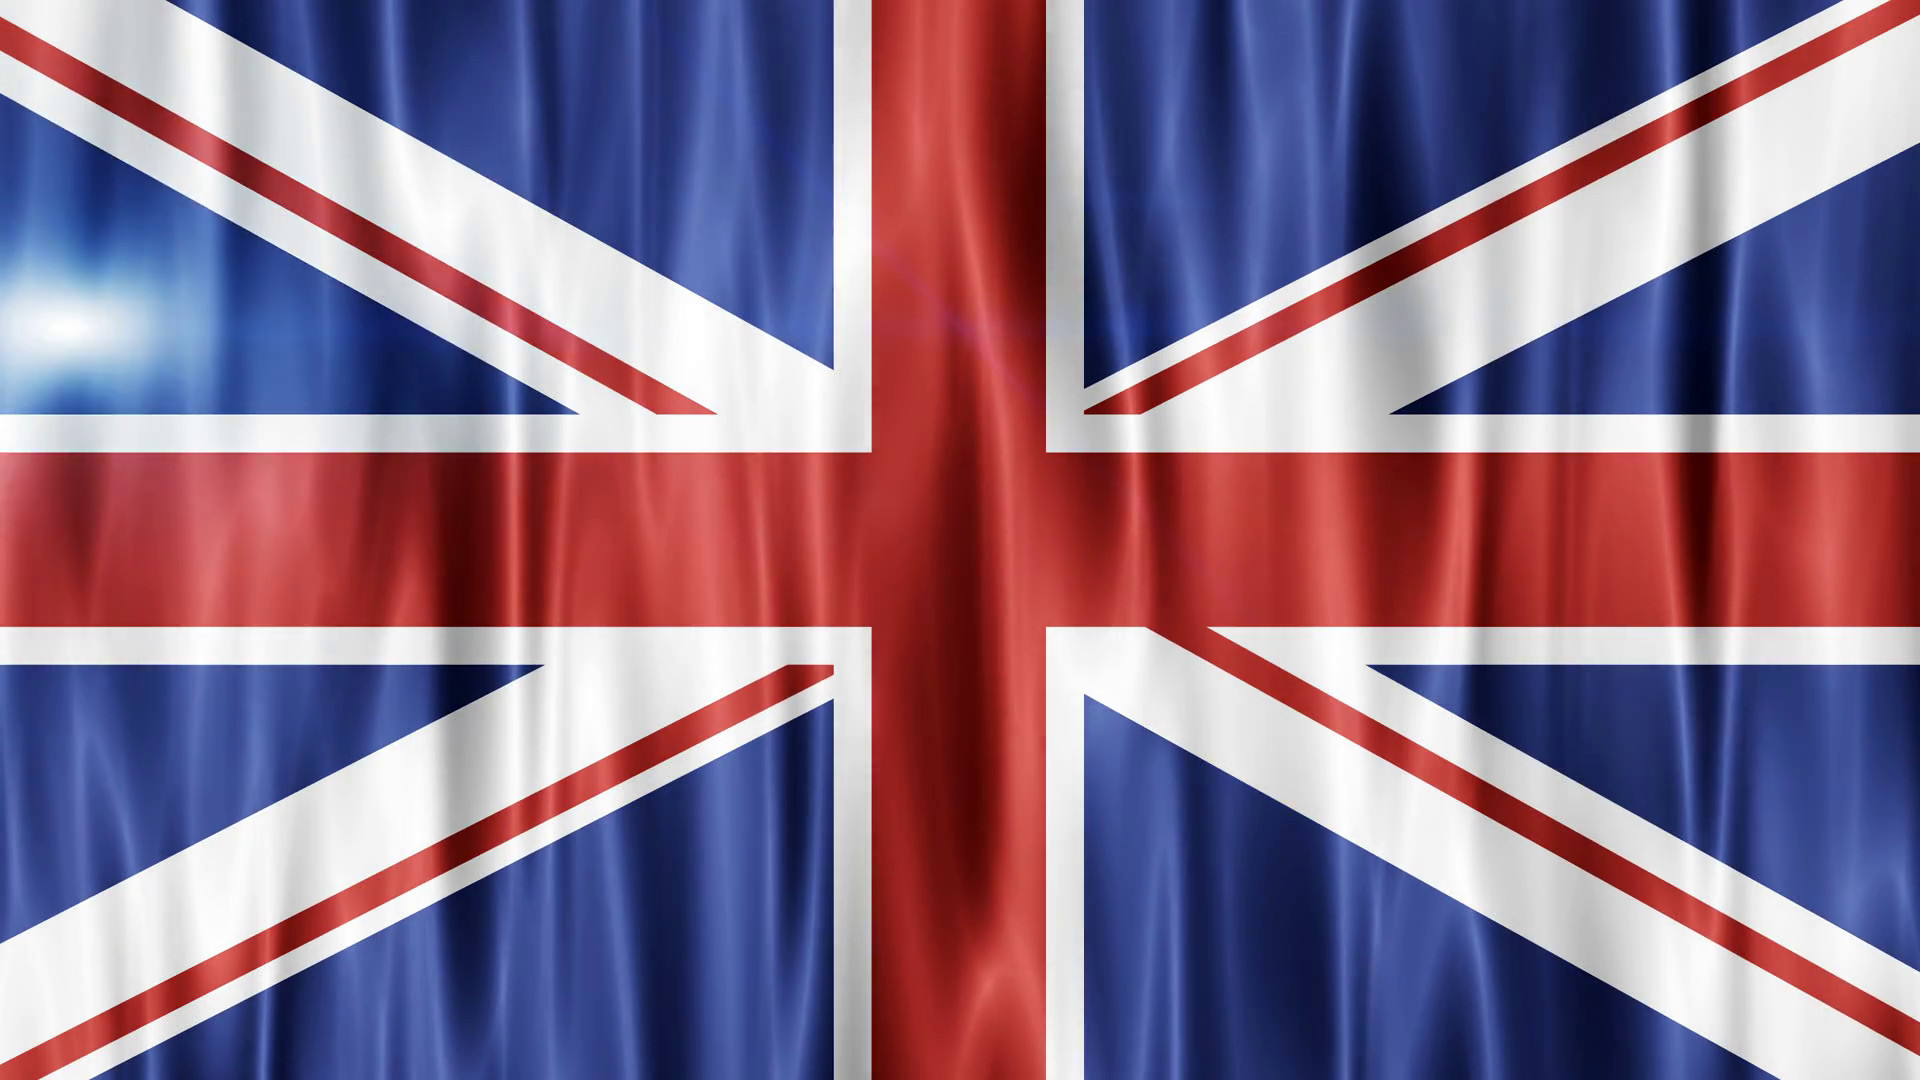 1920x1080 Waving Flags of the United Kingdom. UK Flag animation background. UHD 4k  3840x2160